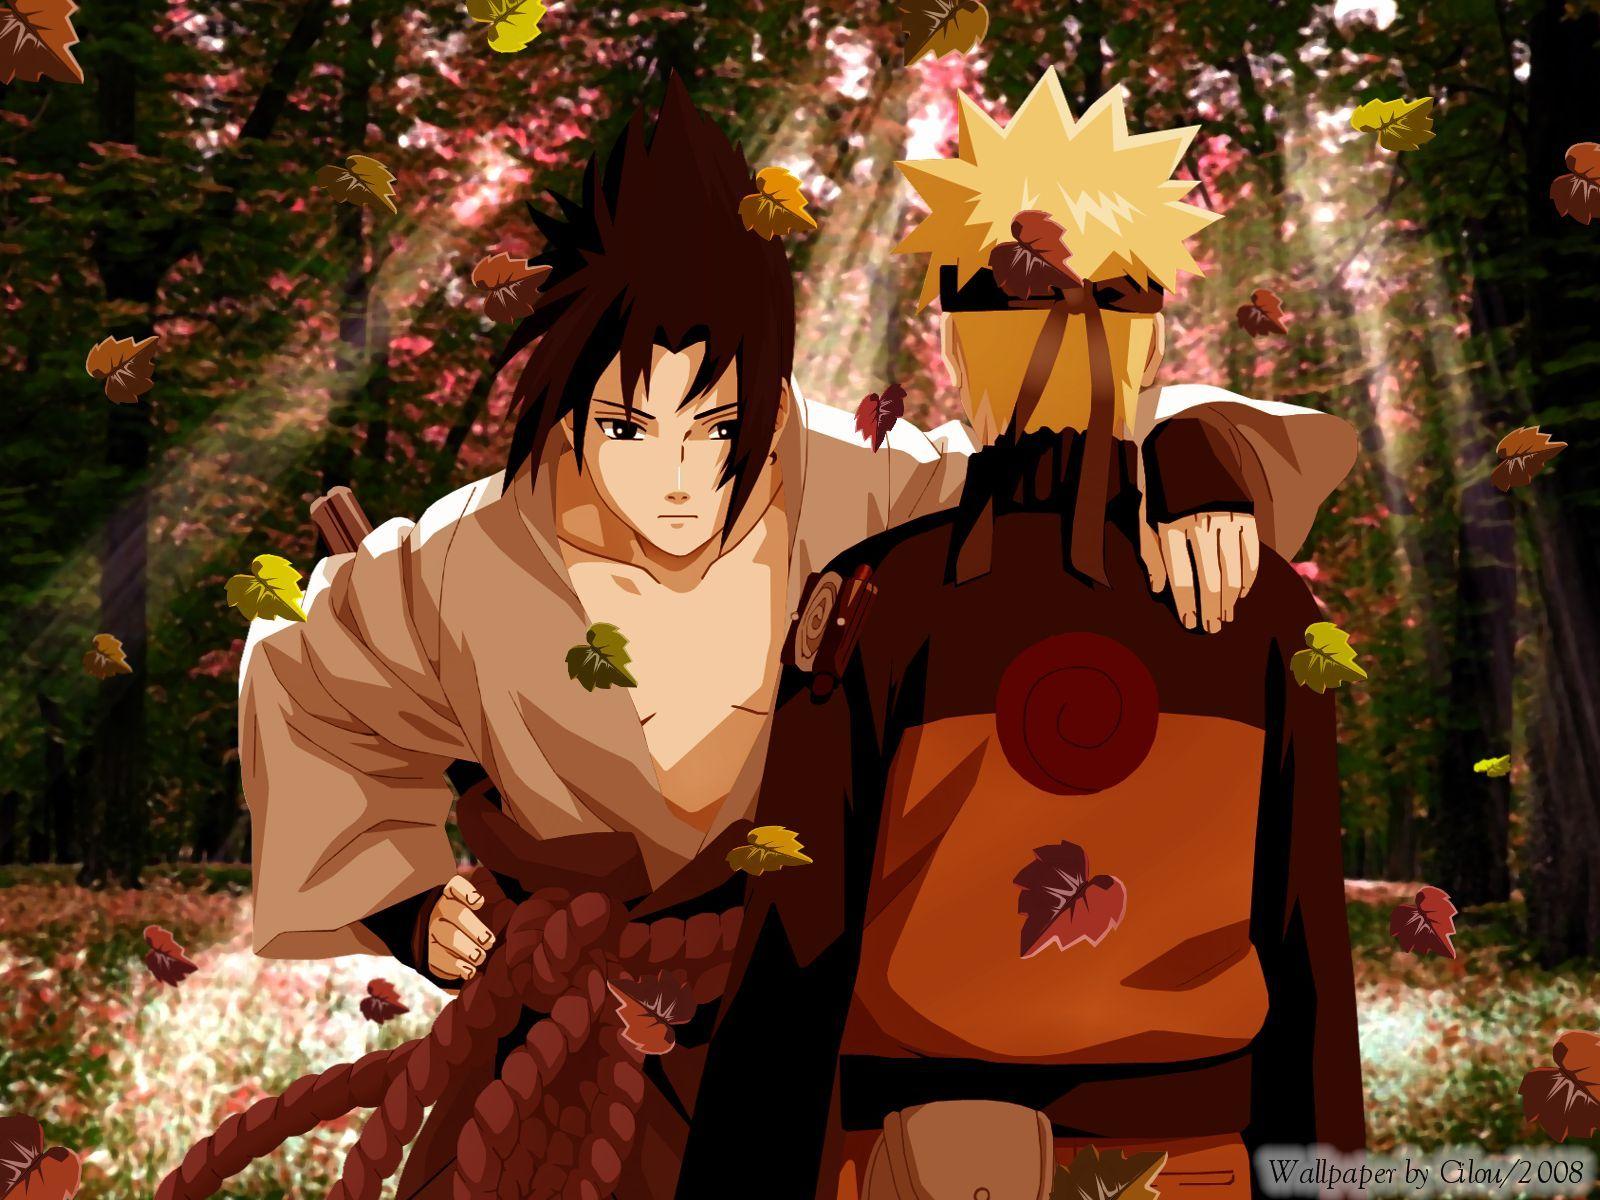 Wallpaper Sasuke Naruto Shippuden Hd Anime Image Naruto